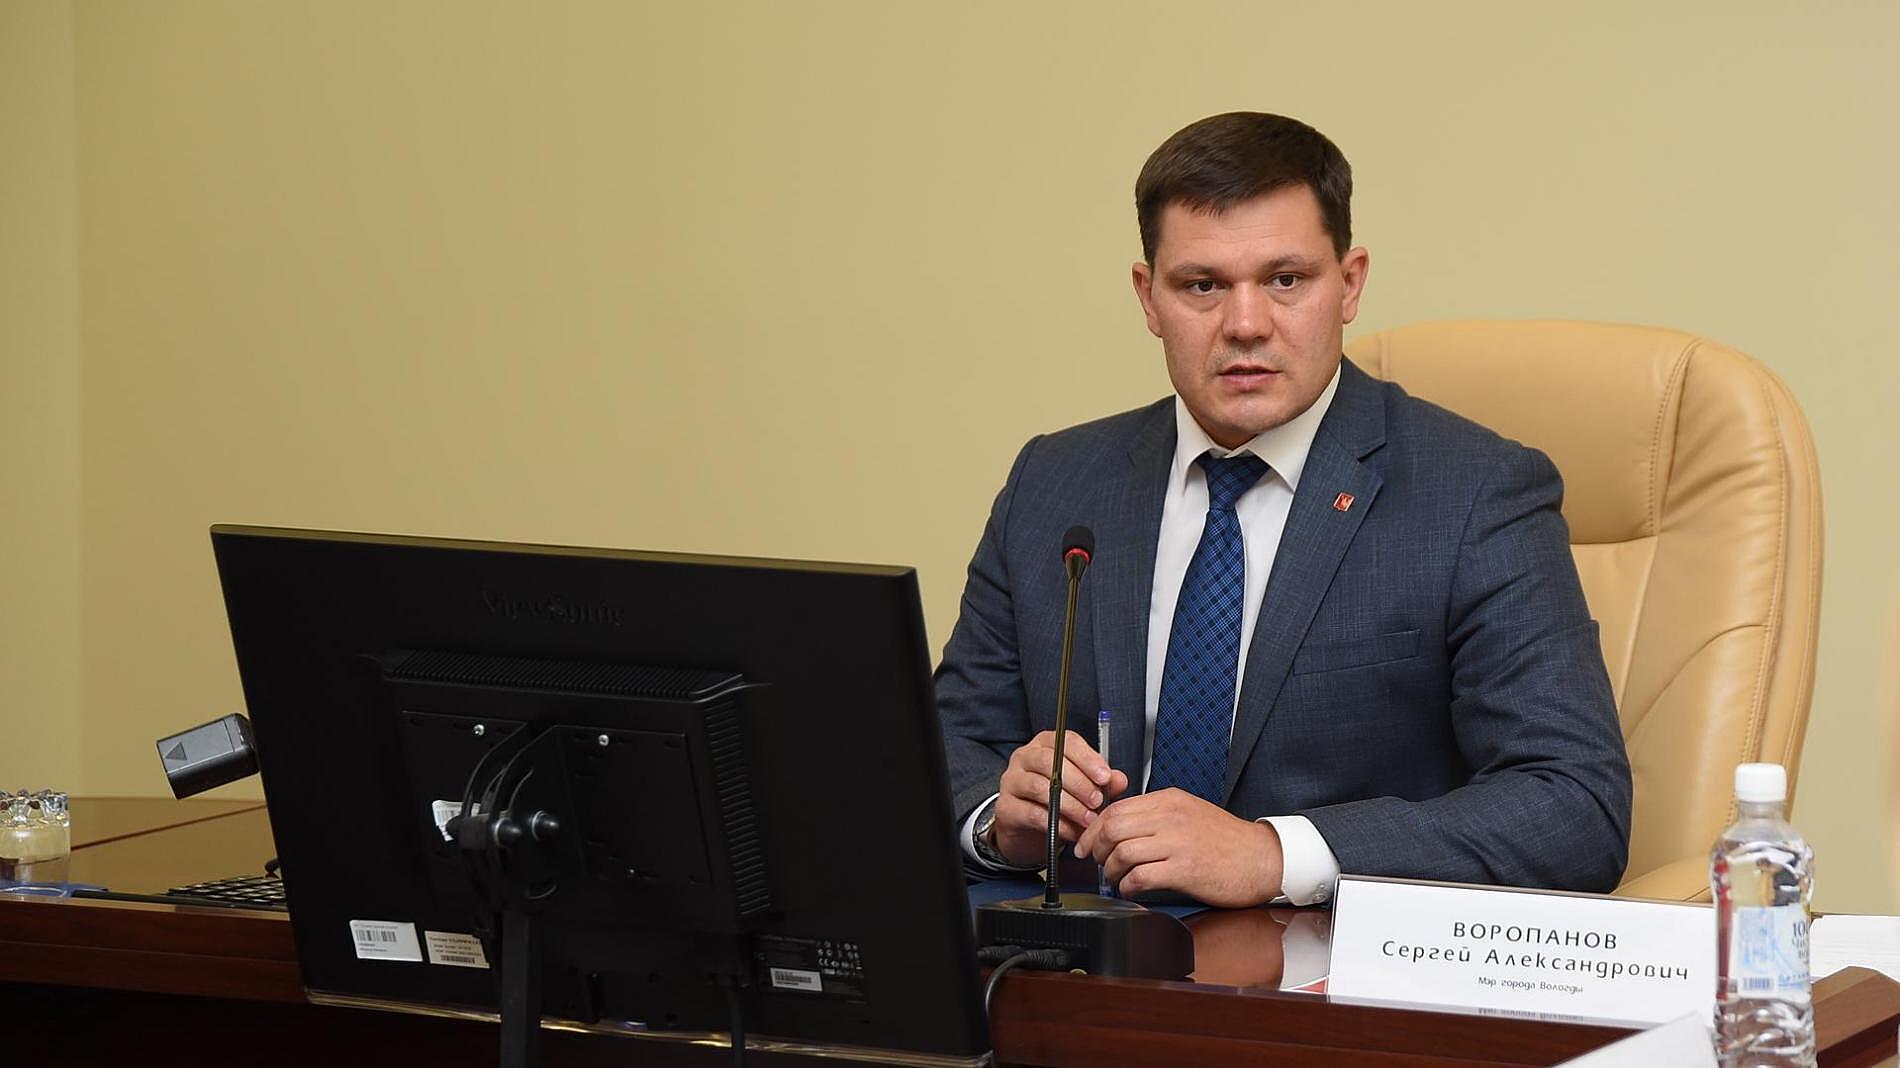 Сергей Воропанов поднялся на девять пунктов в Национальном рейтинге мэров